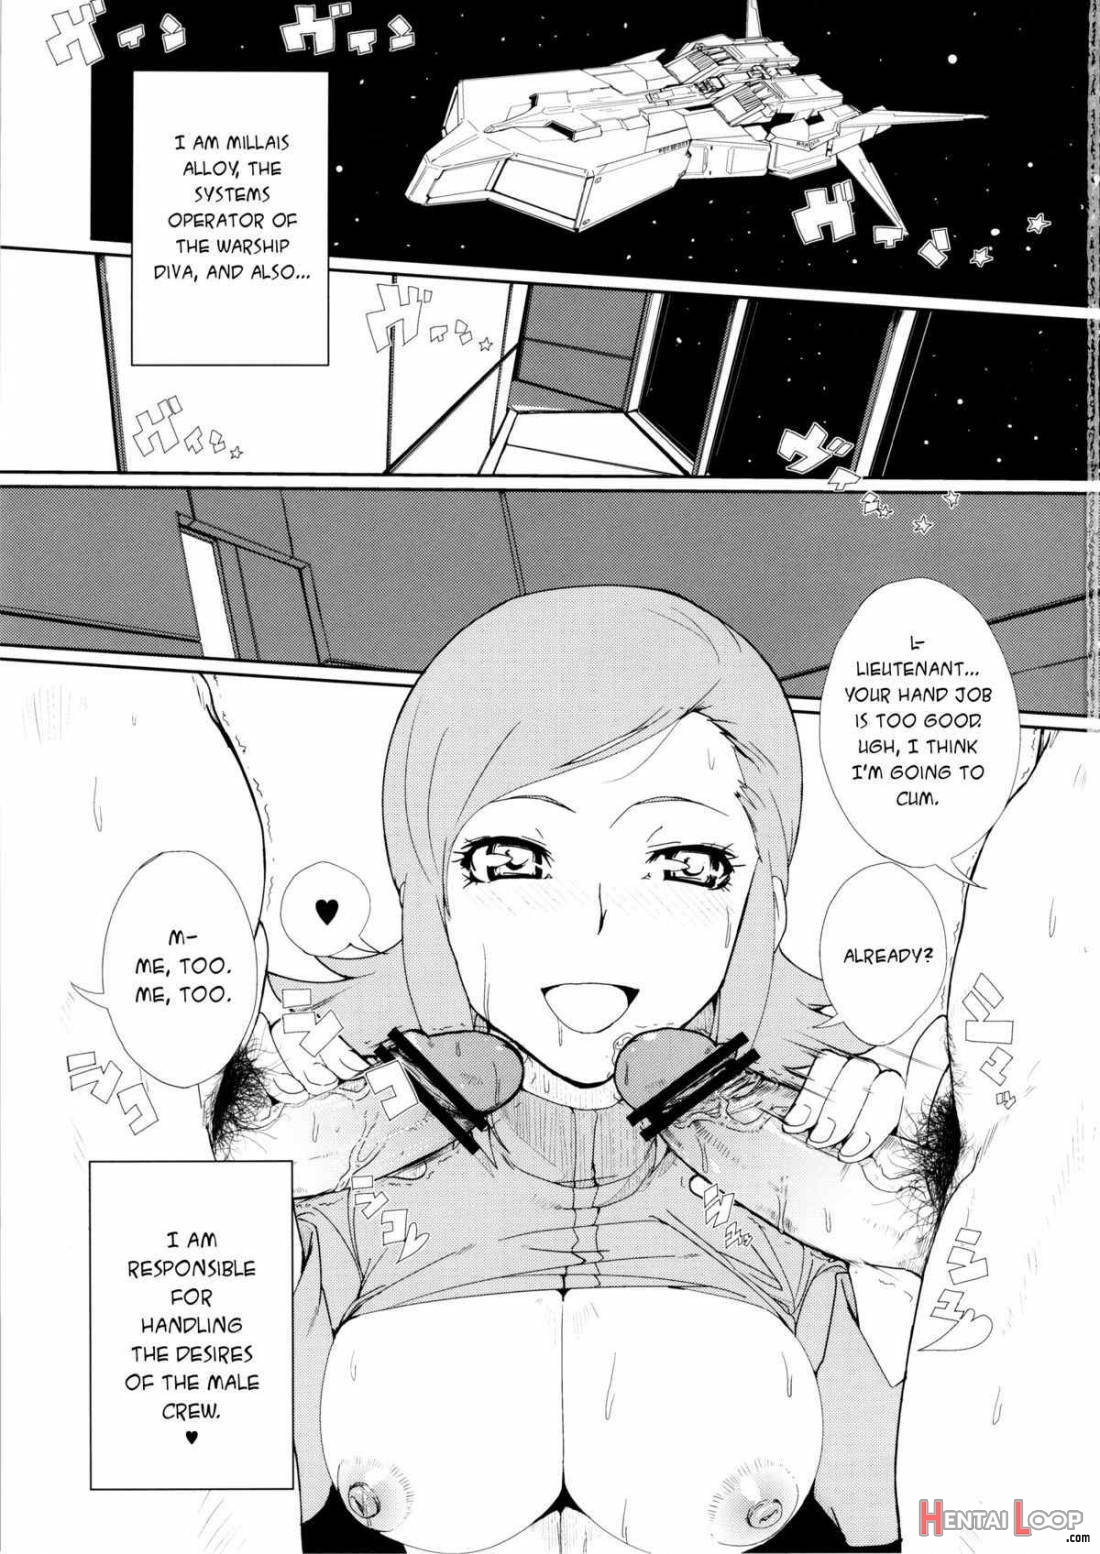 Mii-chan Wa Okazu Desuyo! page 2